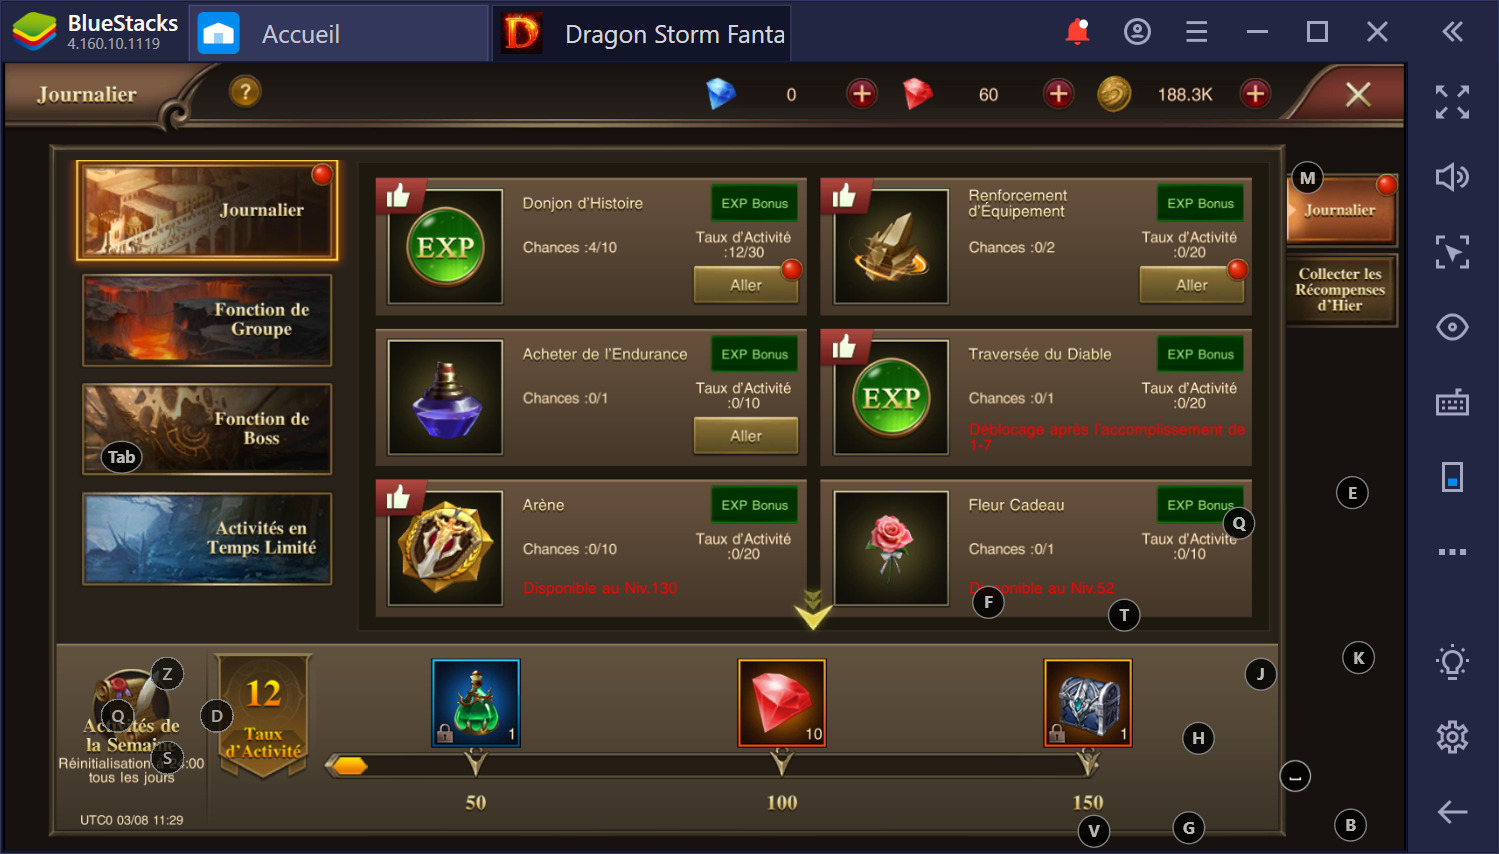 Dragon Storm Fantasy : Comment jouer au jeu sur BlueStacks